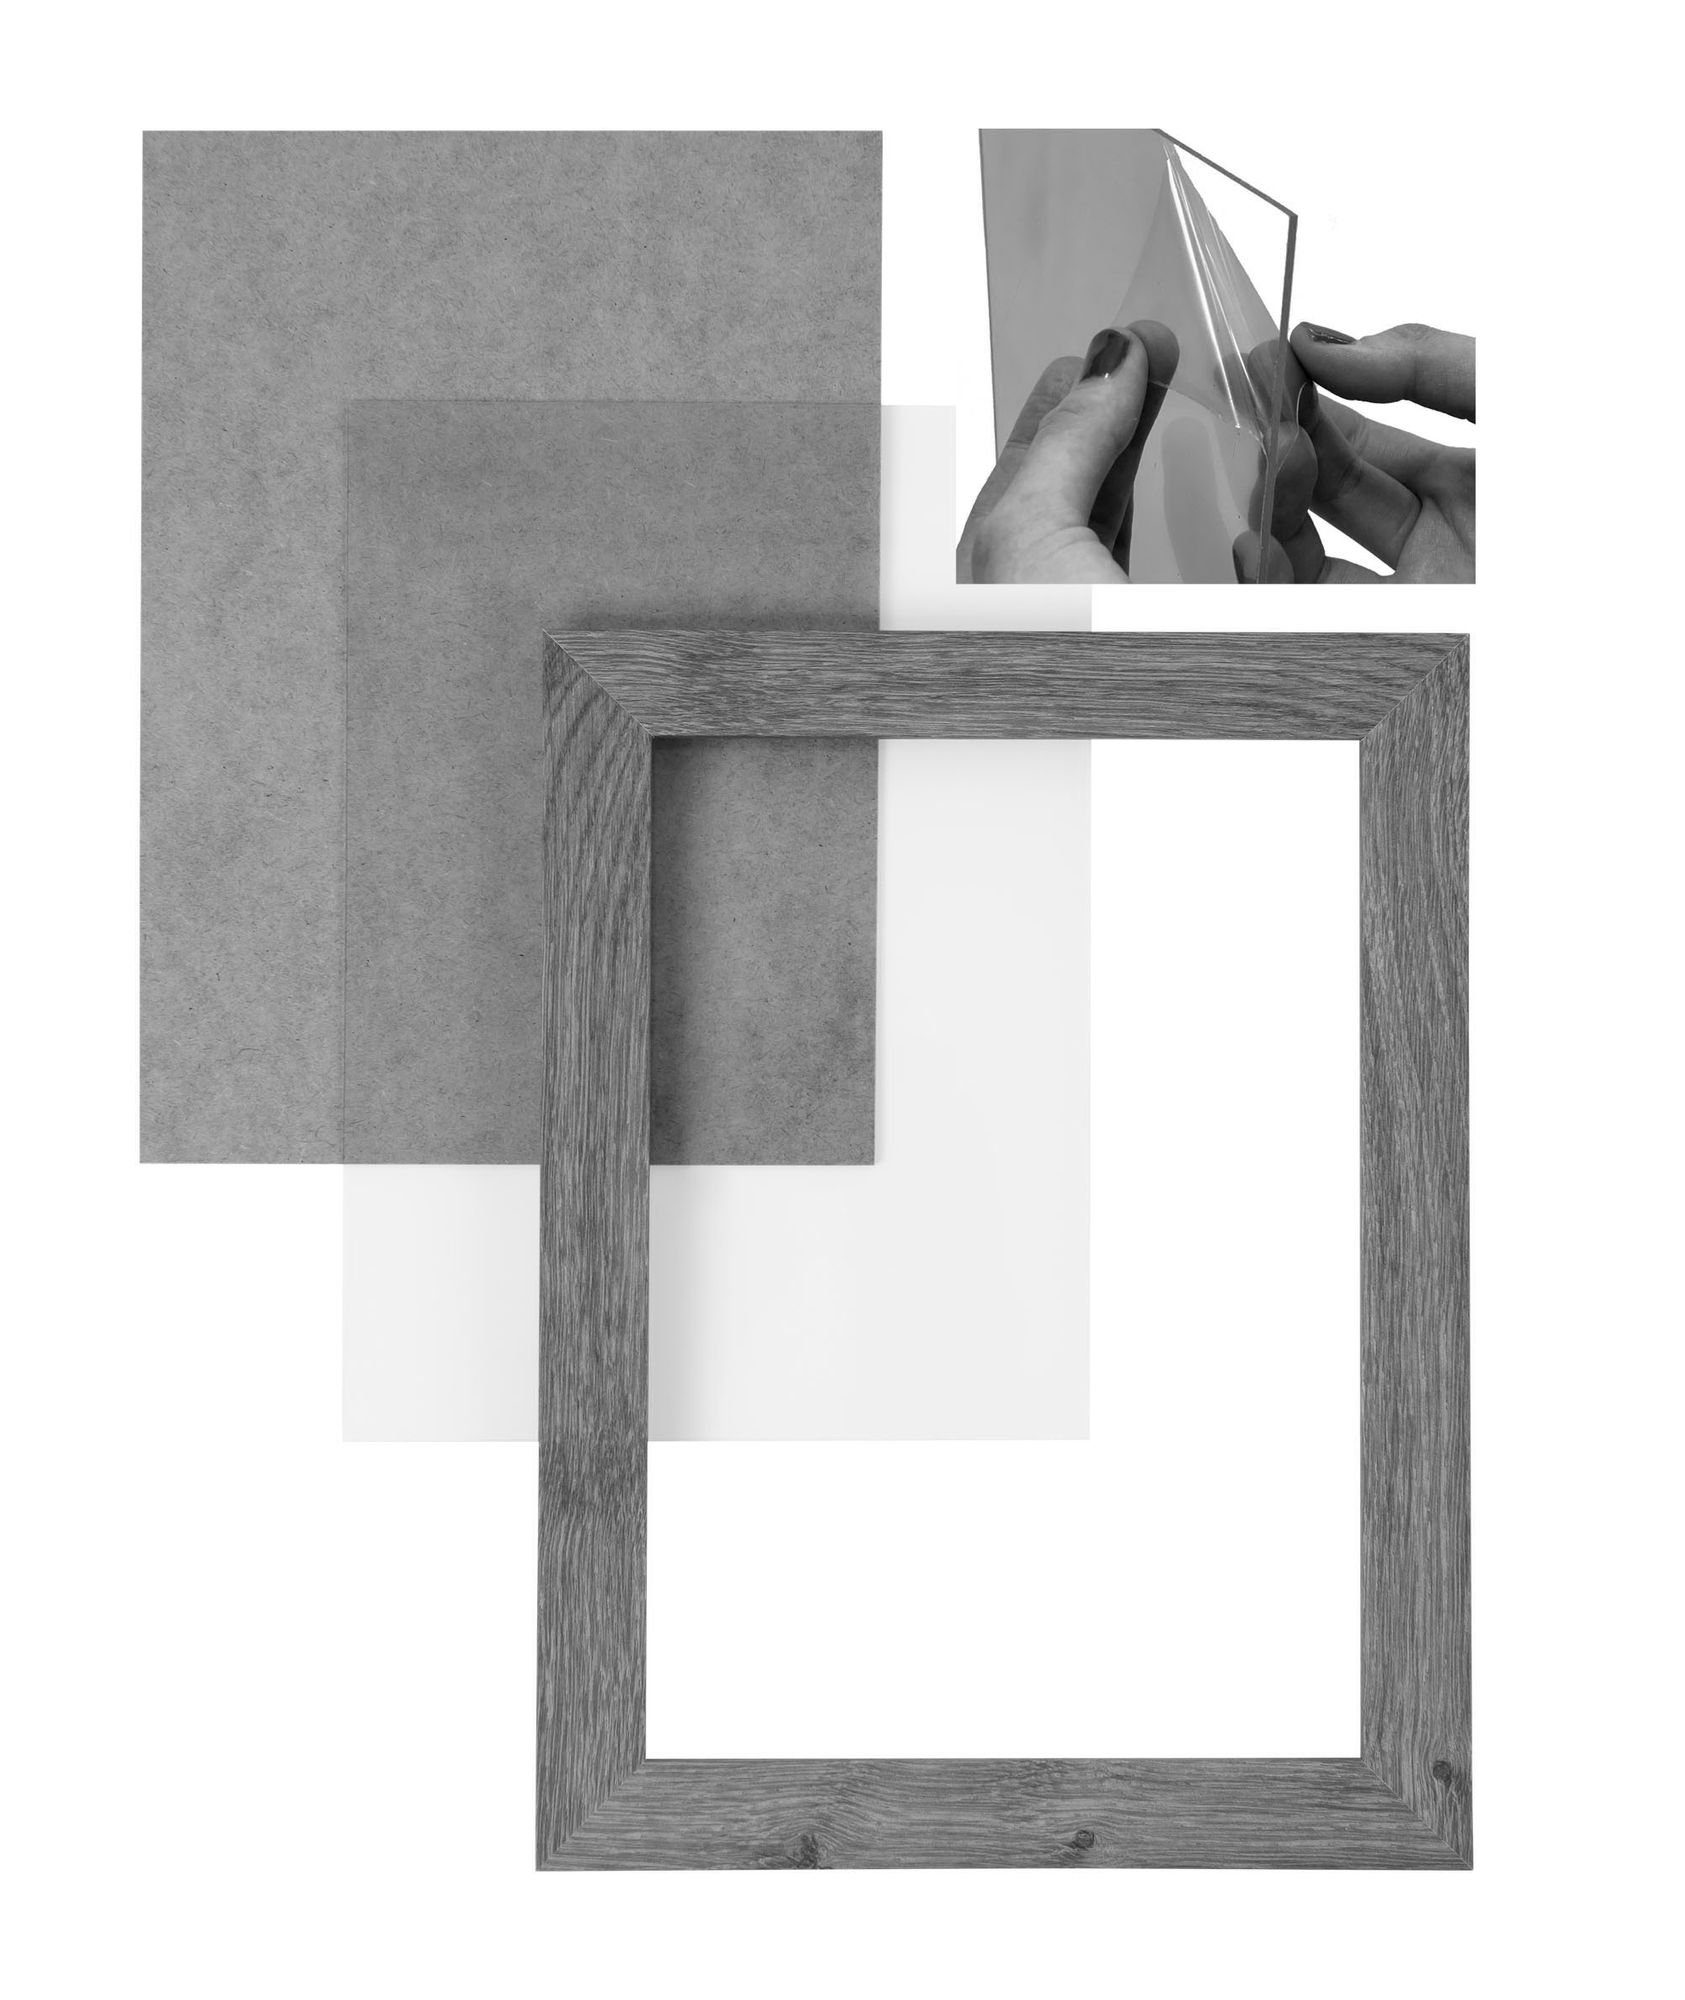 Clamaro inkl. handgefertigt Aufhänger 16x21 eckiger Rahmen 'Collage' Maß Holz nach FSC® altholz eiche Bilderrahmen Moderner Acrylglas, MDF CLAMARO Bilderrahmen und Rückwand in